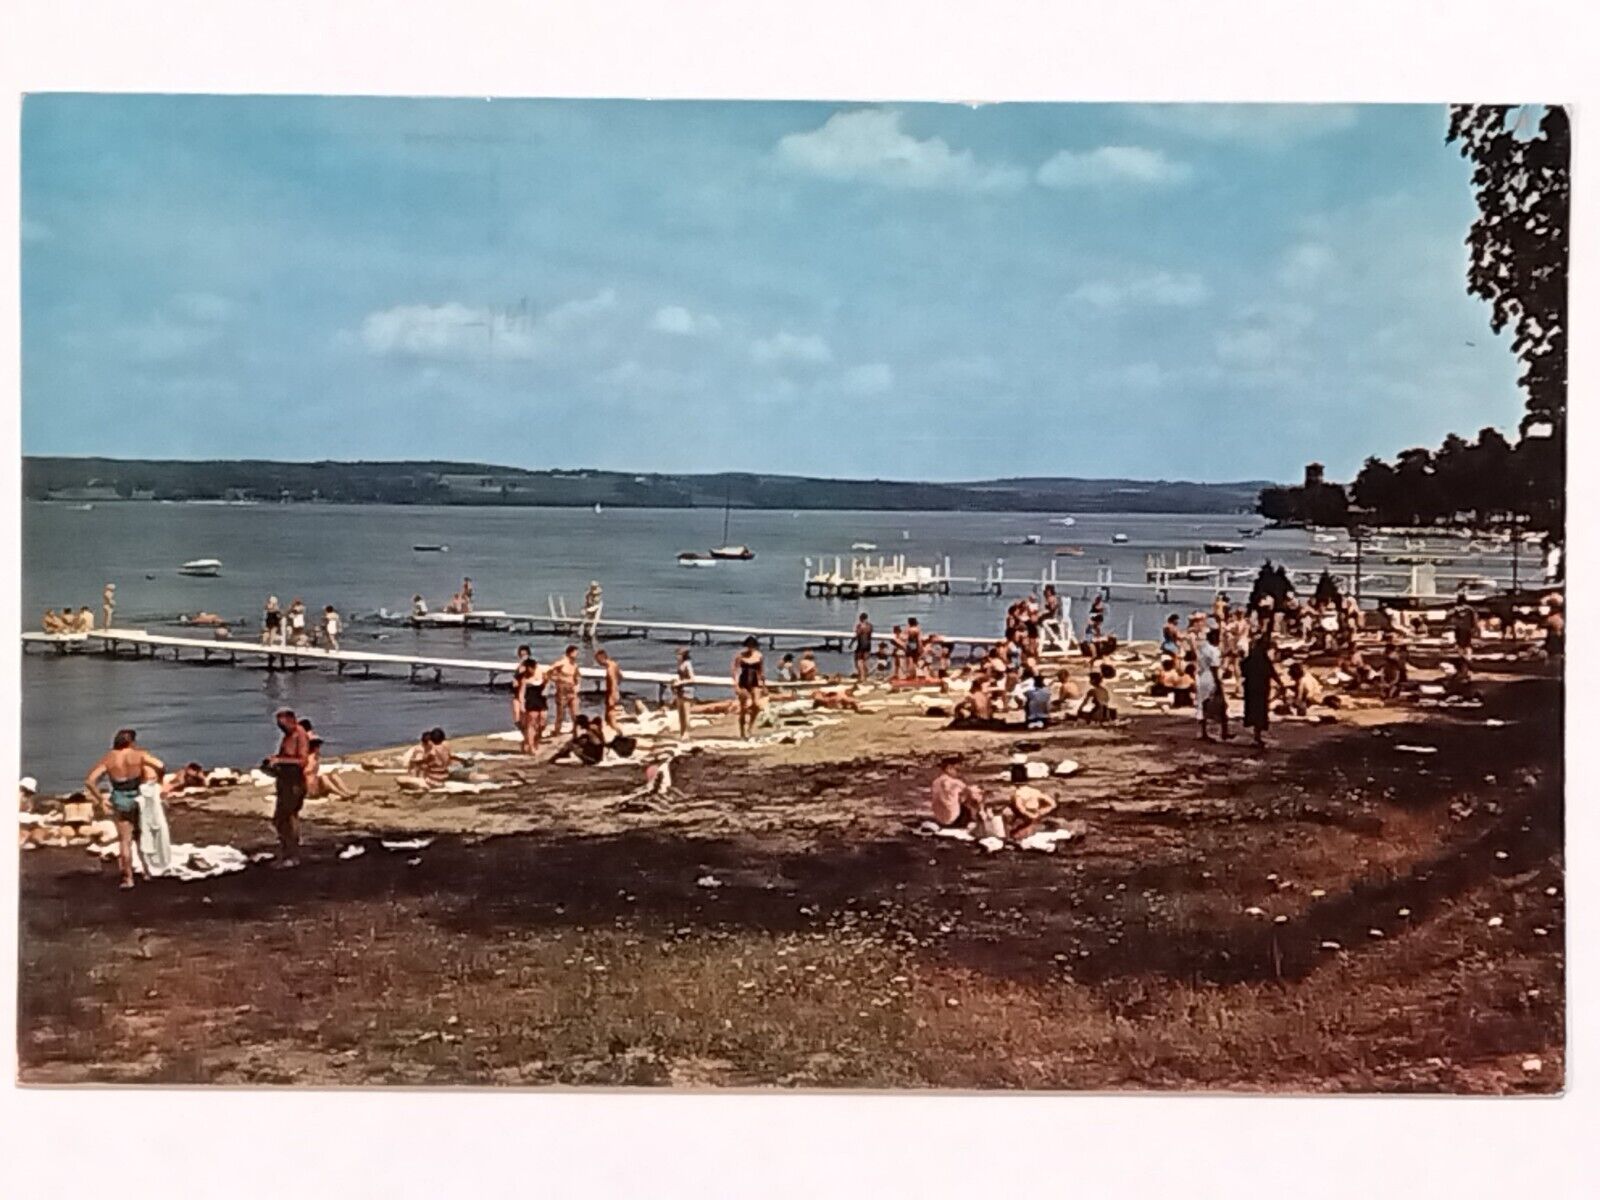 Miller Bell Tower Beach Chautauqua New York Posted 1964 Postcard